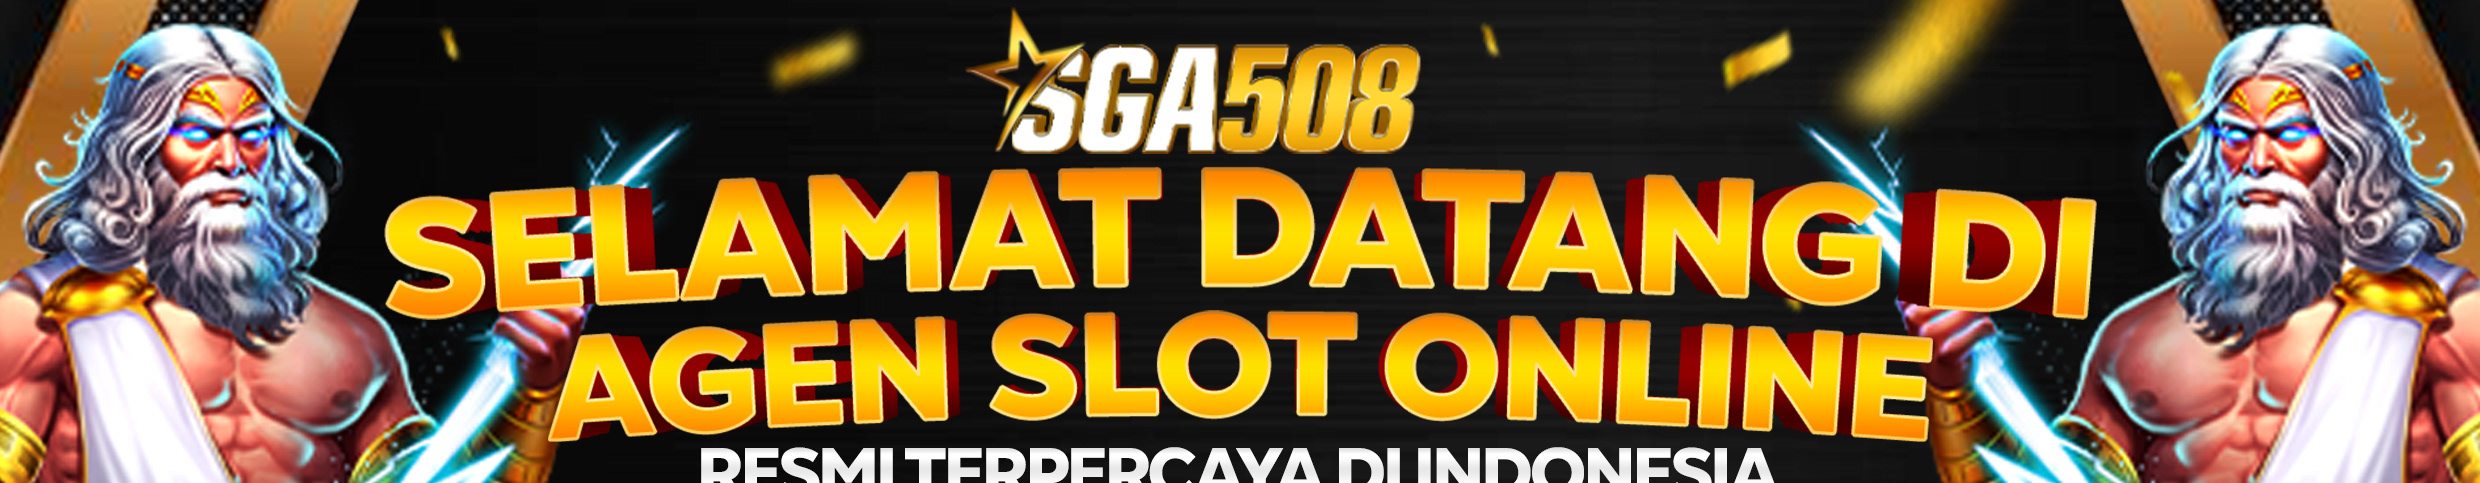 SGA508 Slot Gacor profil başlığı